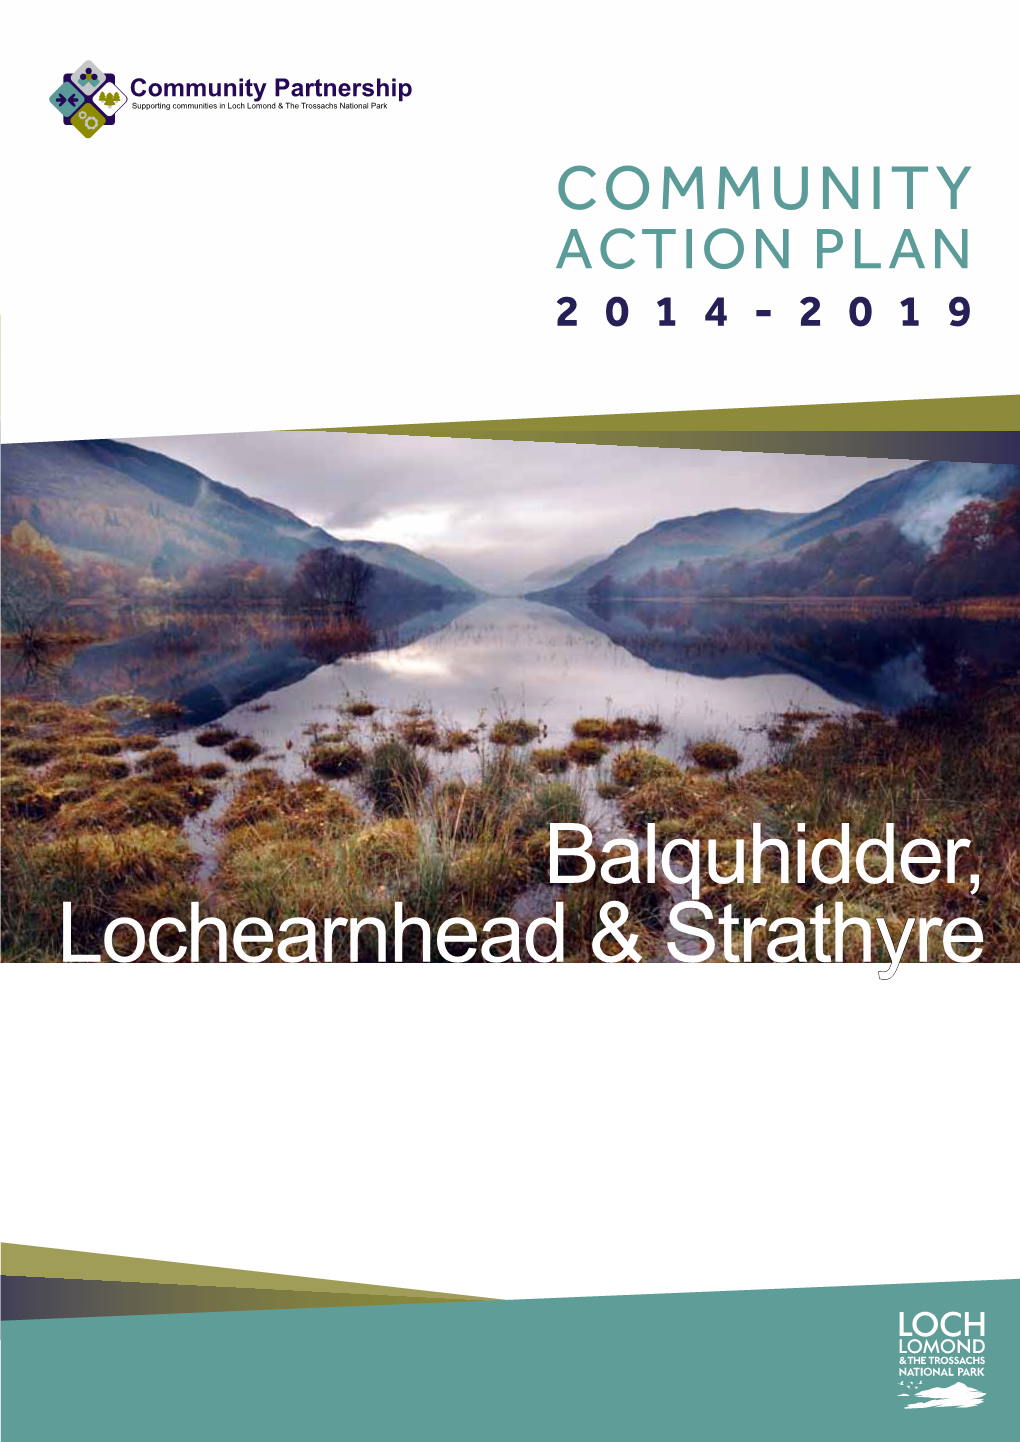 Balquhidder, Lochearnhead & Strathyre